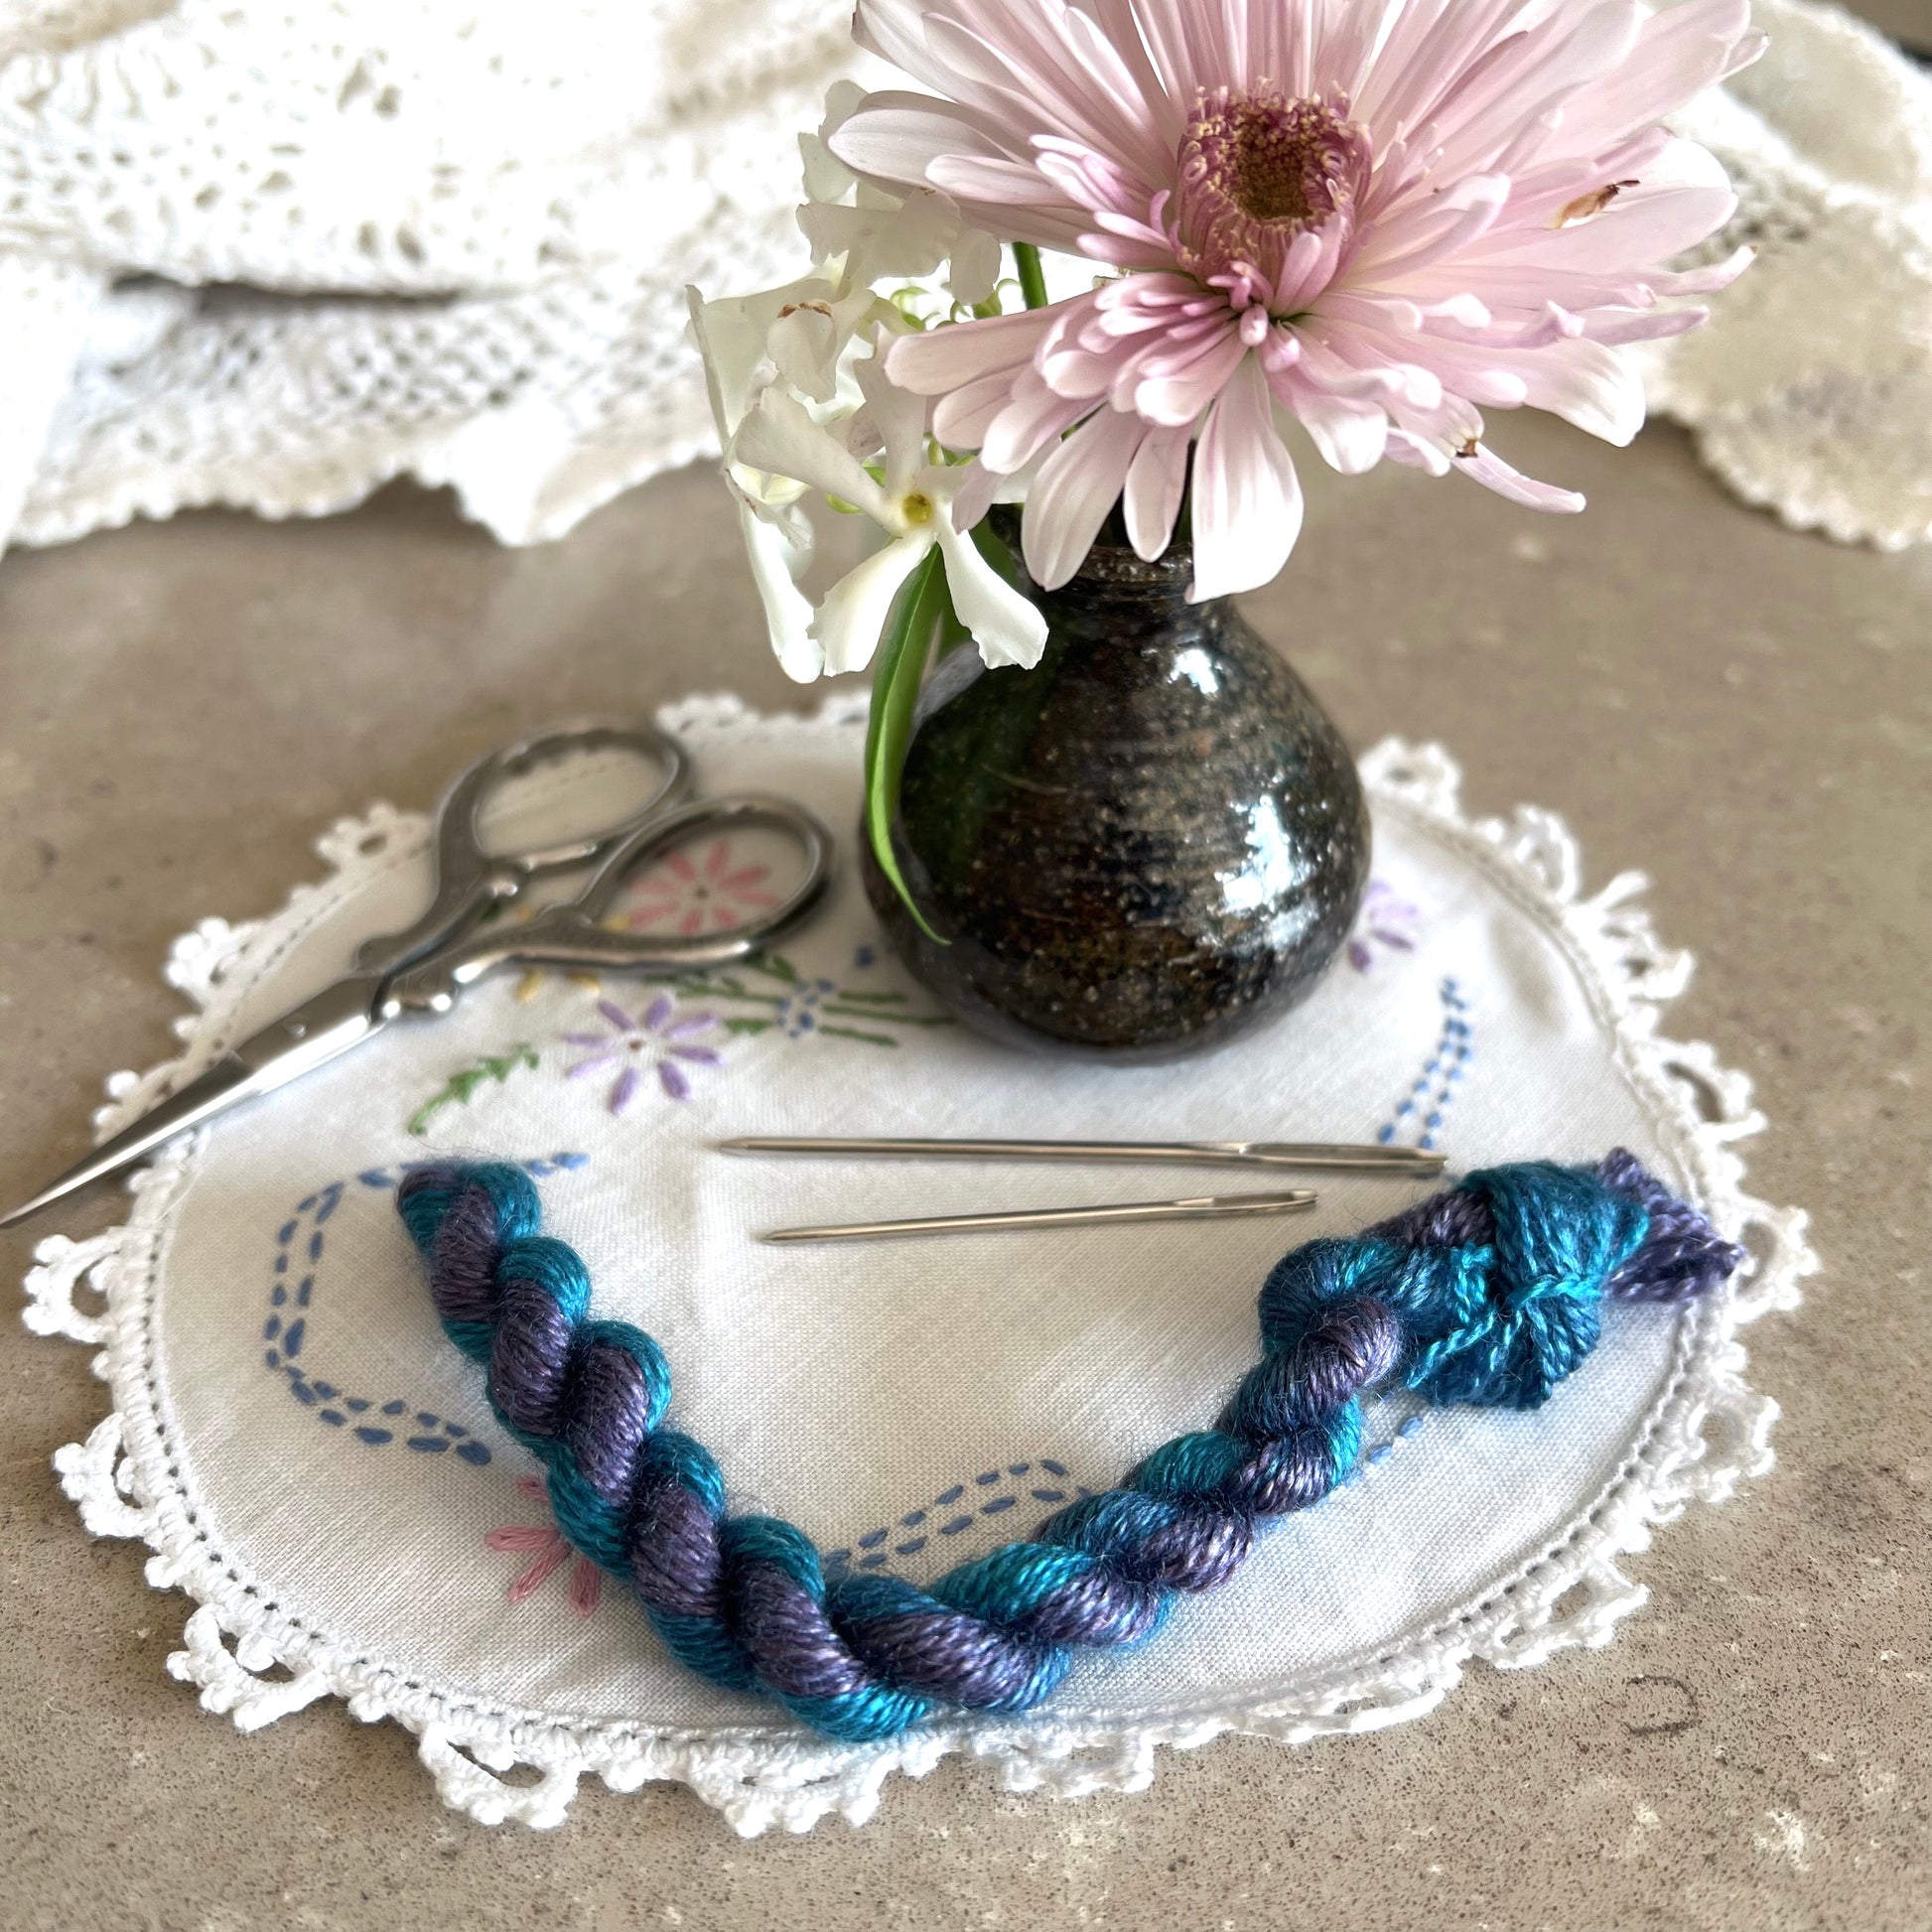 BFL Silk Embroidery Thread - Bright Blue Purple - Natural Fibre Arts